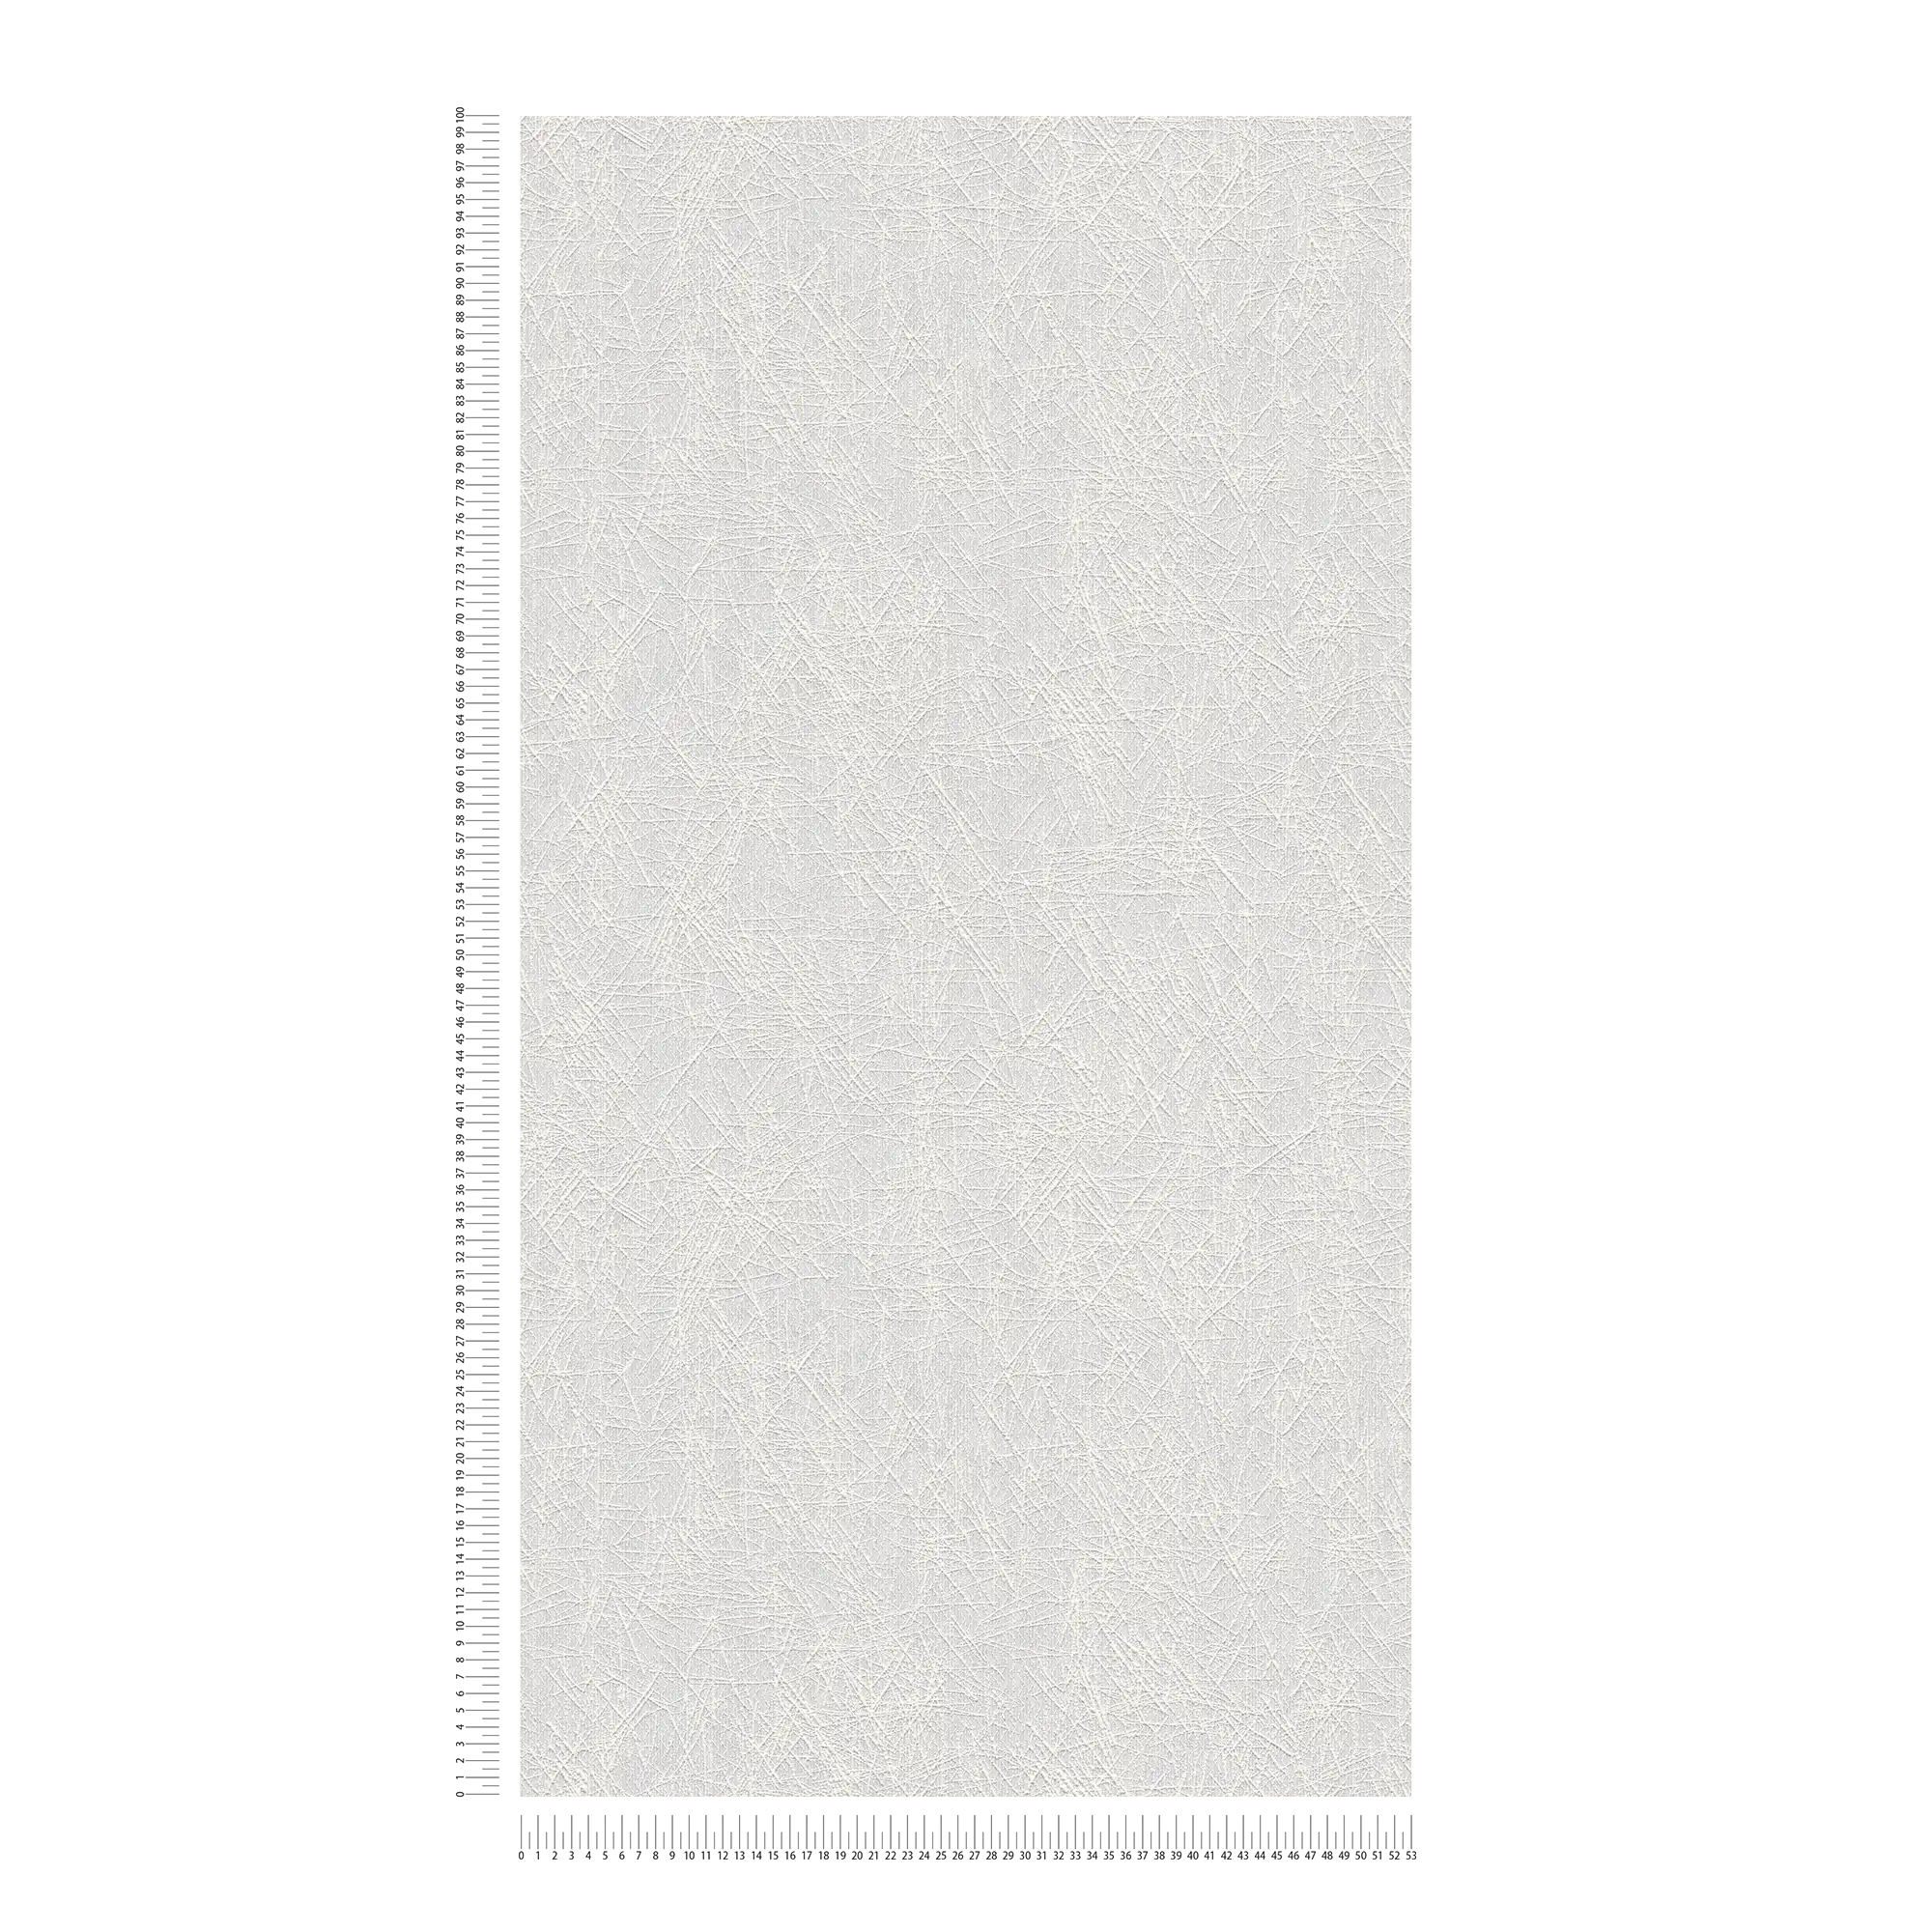             Carta da parati unitaria verniciabile con motivo grafico a linee - Verniciabile, Bianco
        